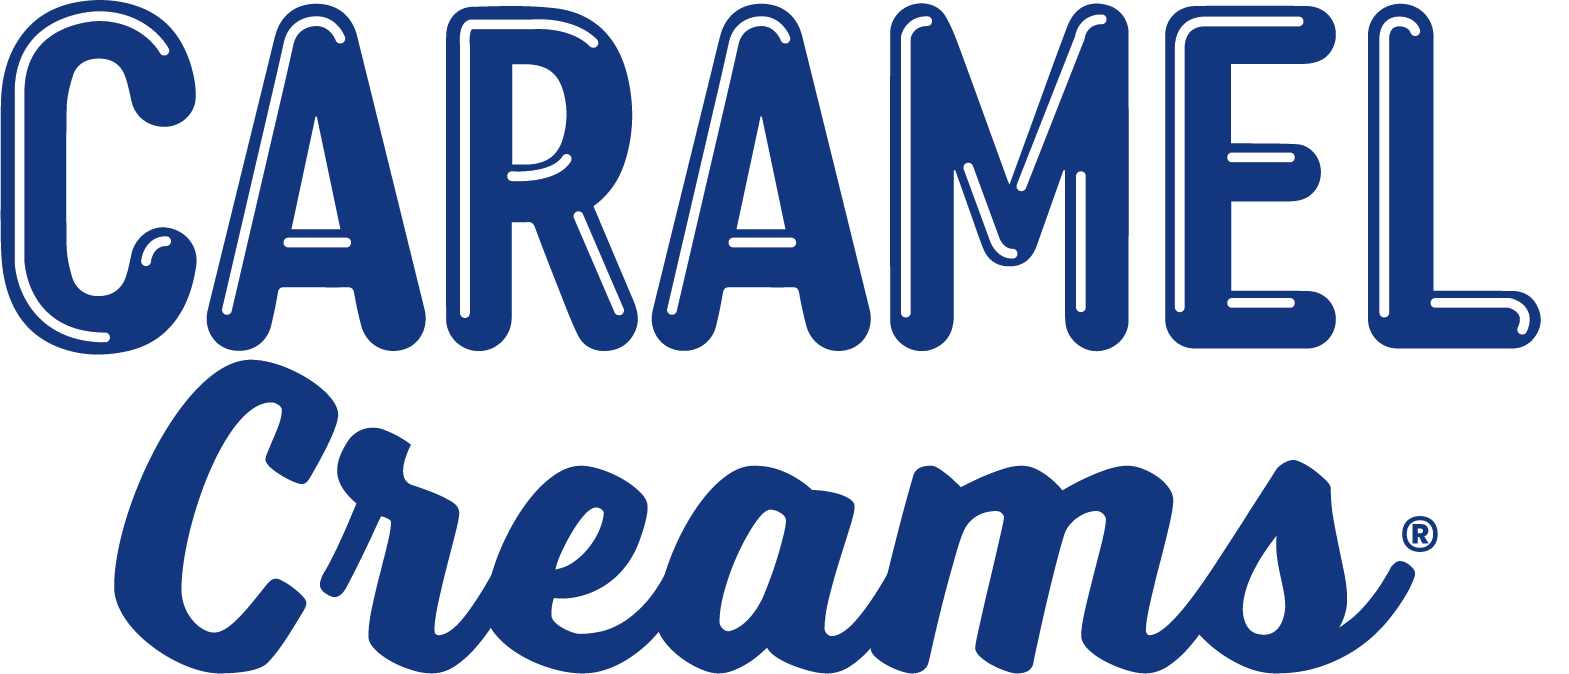 Caramel Creams logo